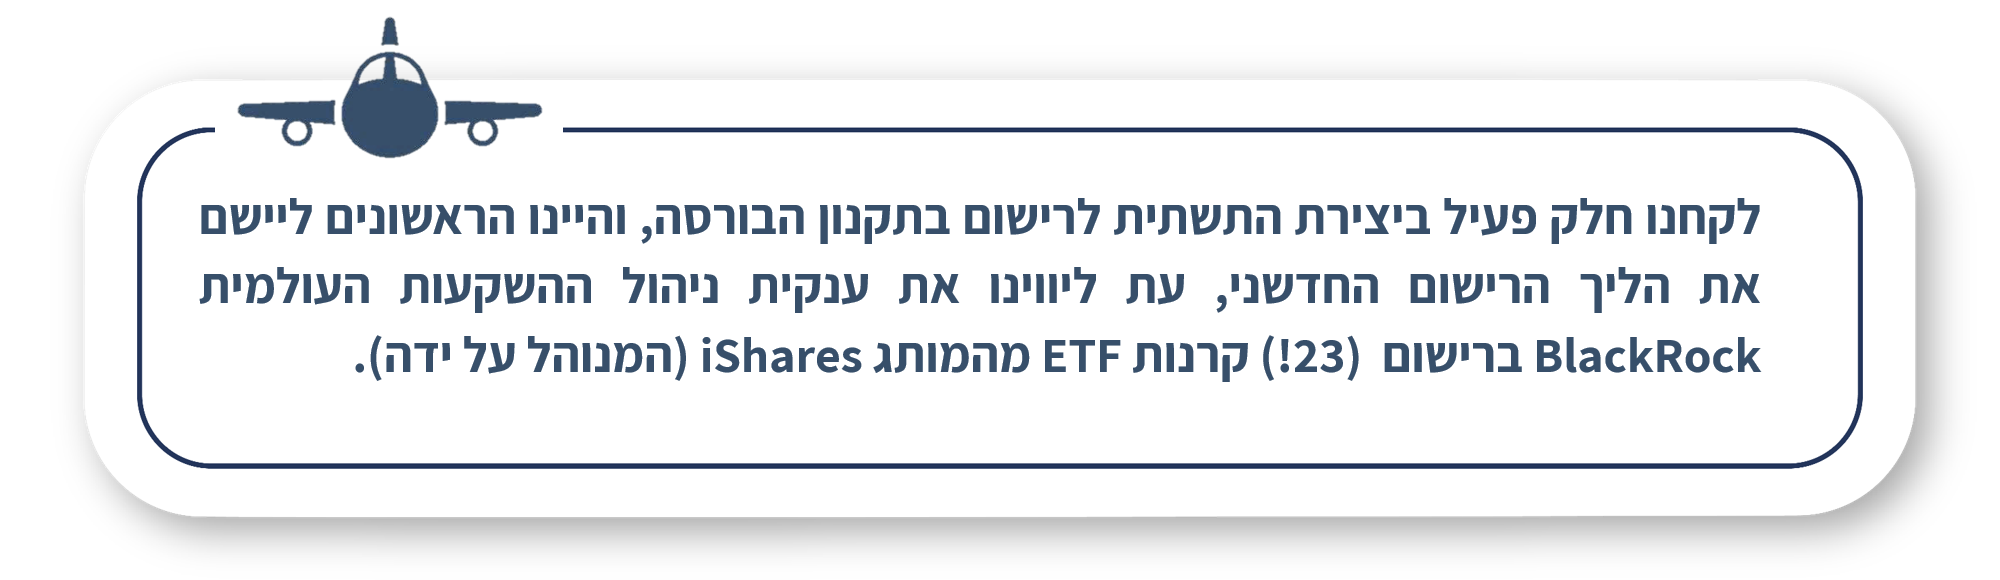 לקחנו חלק פעיל ביצירת התשתית לרישום בתקנון הבורסה, והיינו הראשונים ליישם את הליך הרישום החדשני, עת ליווינו את ענקית ניהול ההשקעות העולמית BlackRock ברישום (23!) קרנות ETF מהמותג iShares (המנוהל על ידה).